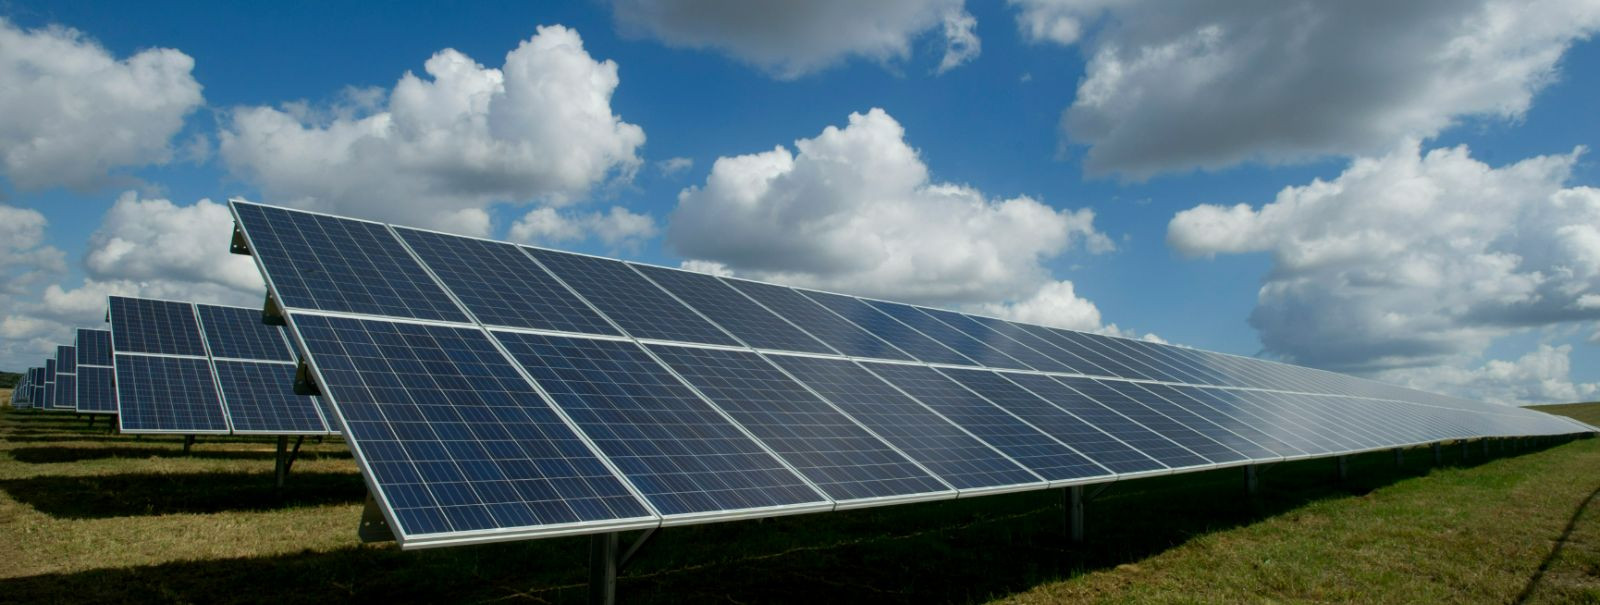 Päikeseenergiat kogutakse päikesekiirtest ja muudetakse elektrienergiaks kasutades fotogalvaanilist (PV) tehnoloogiat või päikesetermoelektrijaamu. Puhta ja taa